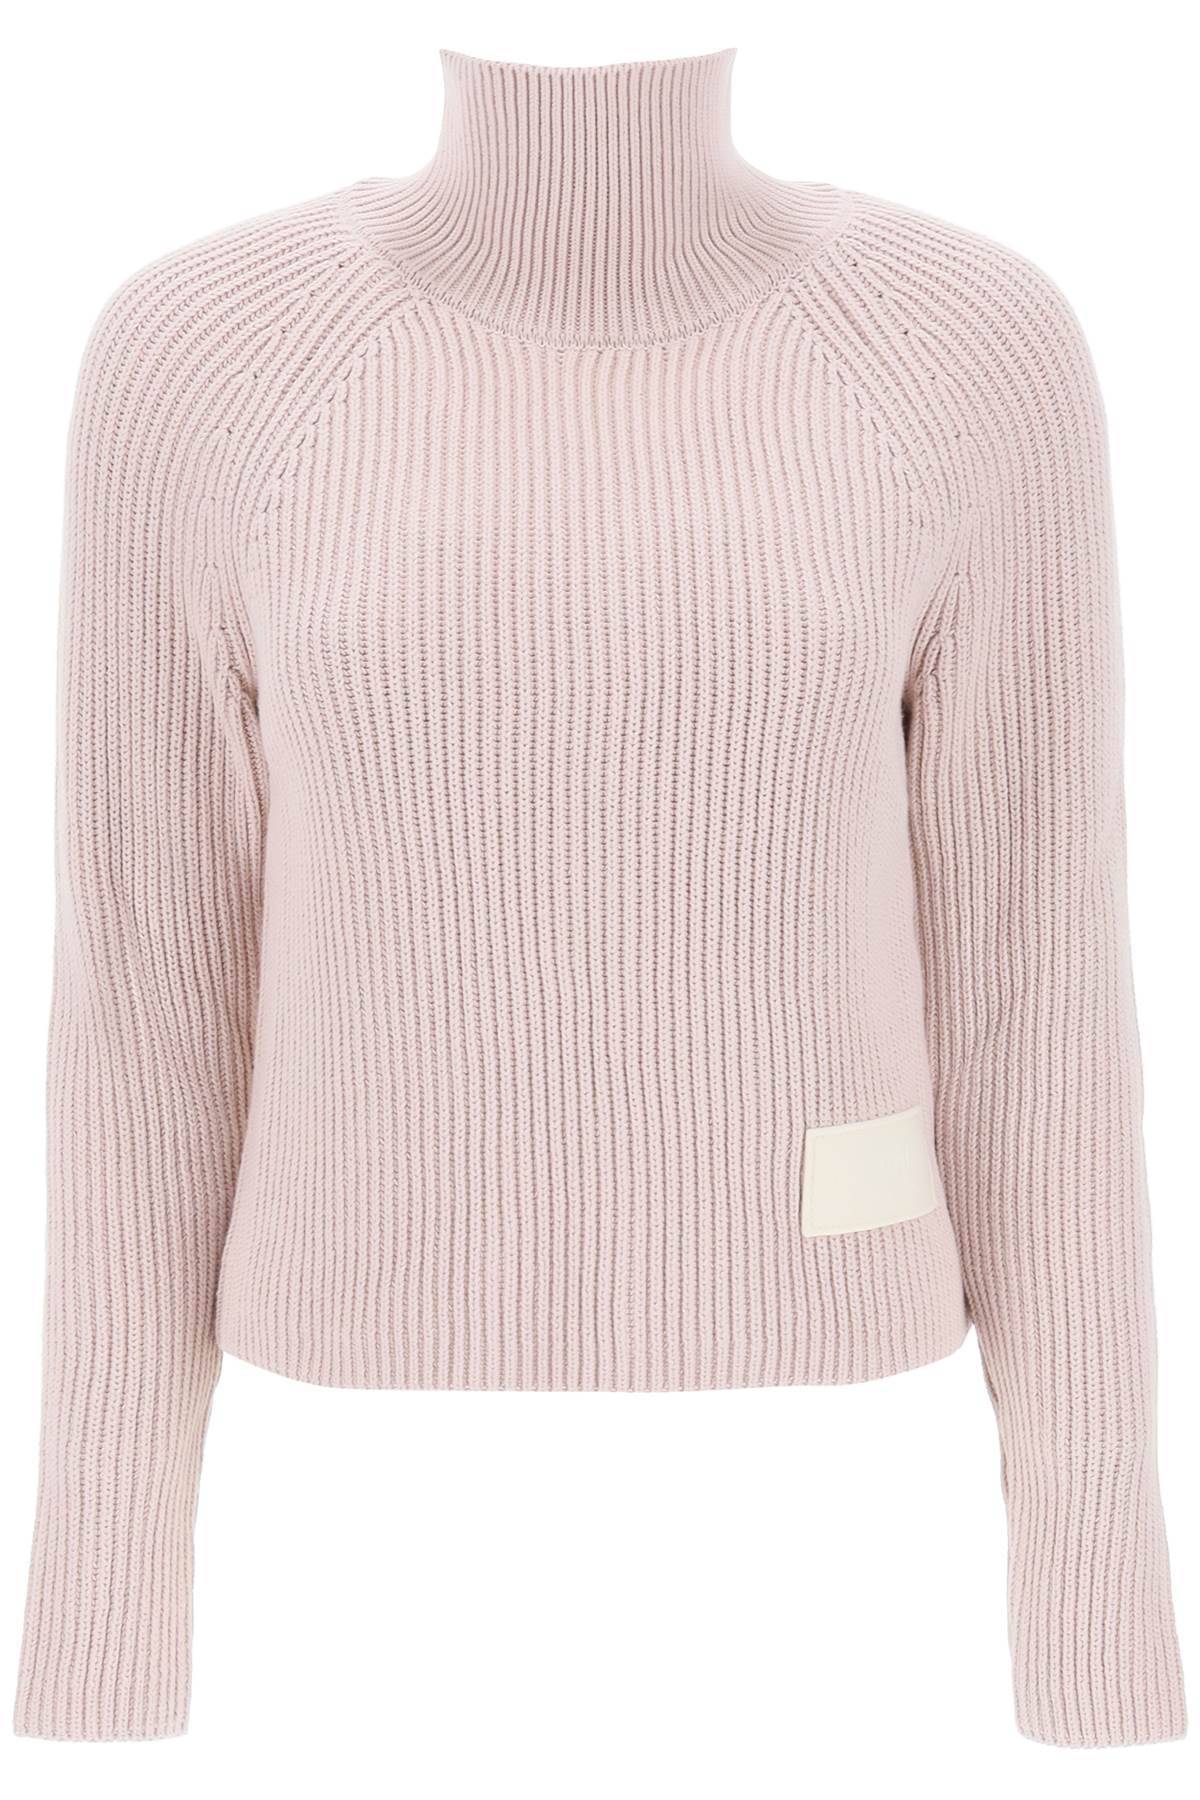 Shop Ami Alexandre Mattiussi English Rib Funnel-neck Sweater In Pink